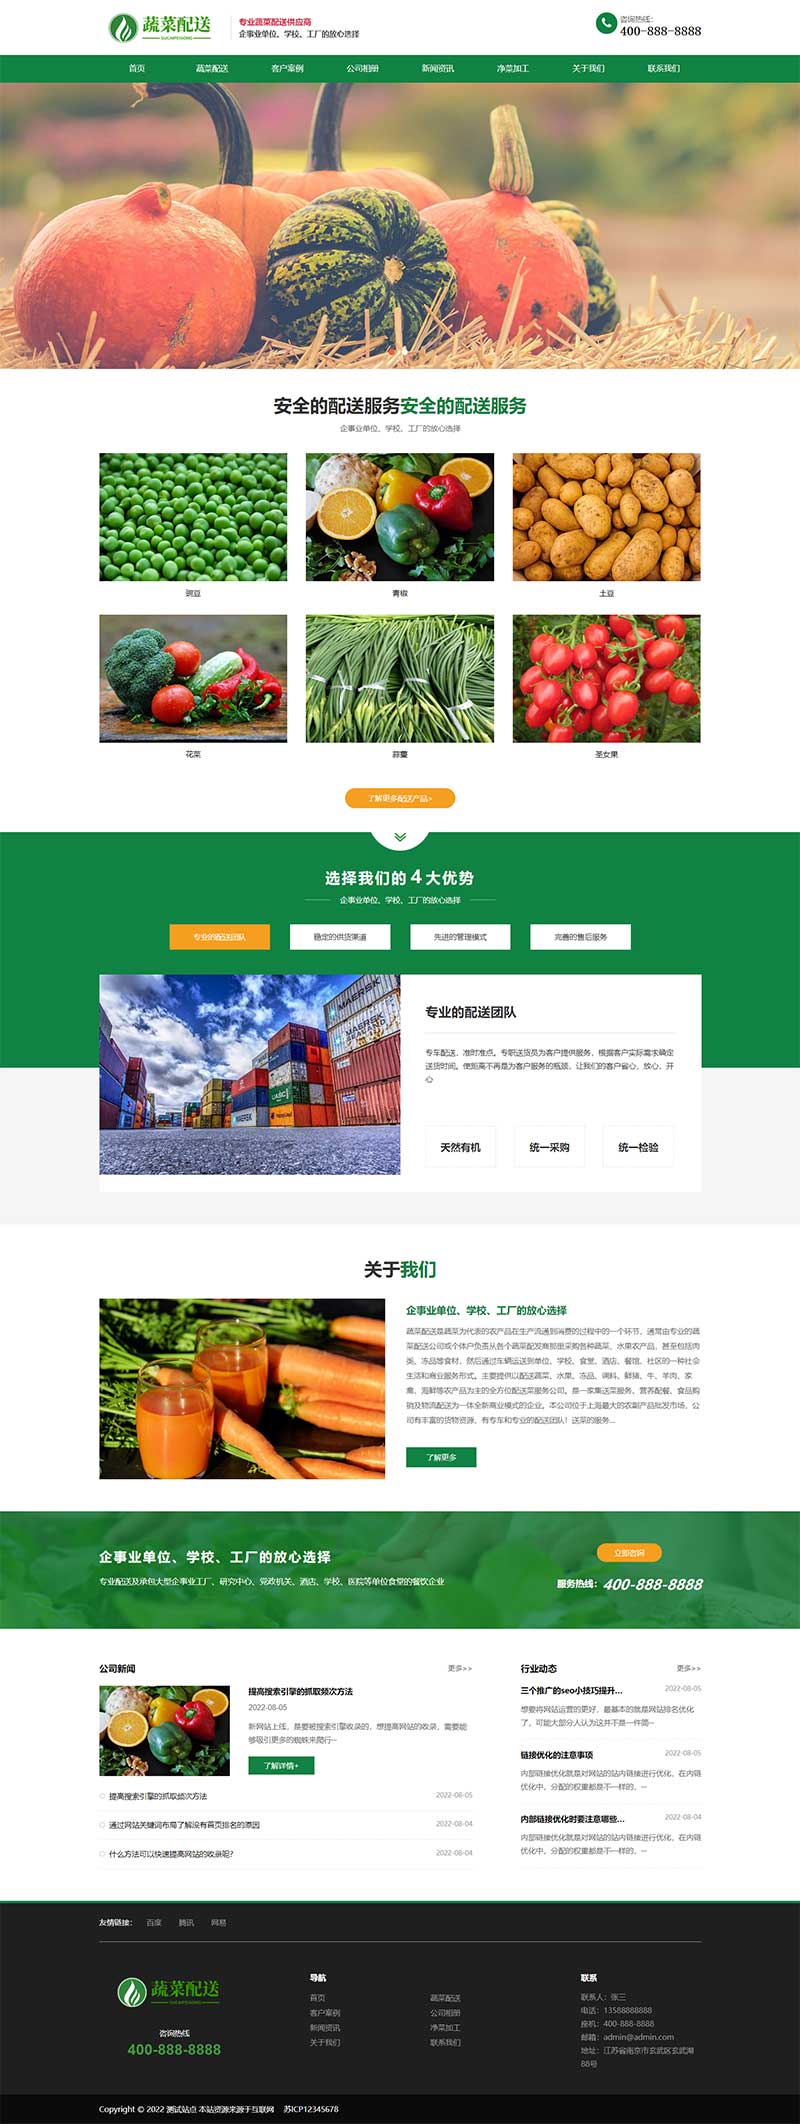 响应式绿色果蔬配送网站源码 蔬菜配送网站pbootcms模板(自适应手机版)-1